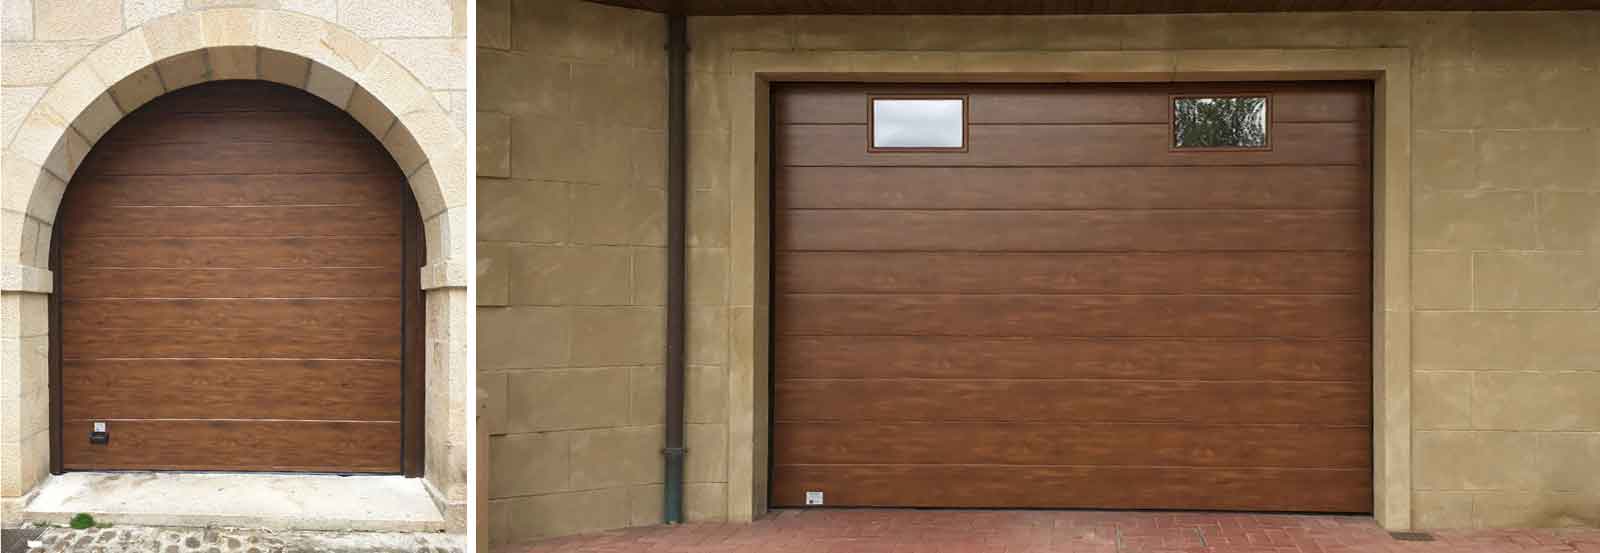 AMM Puertas Y Servicios puertas de madera